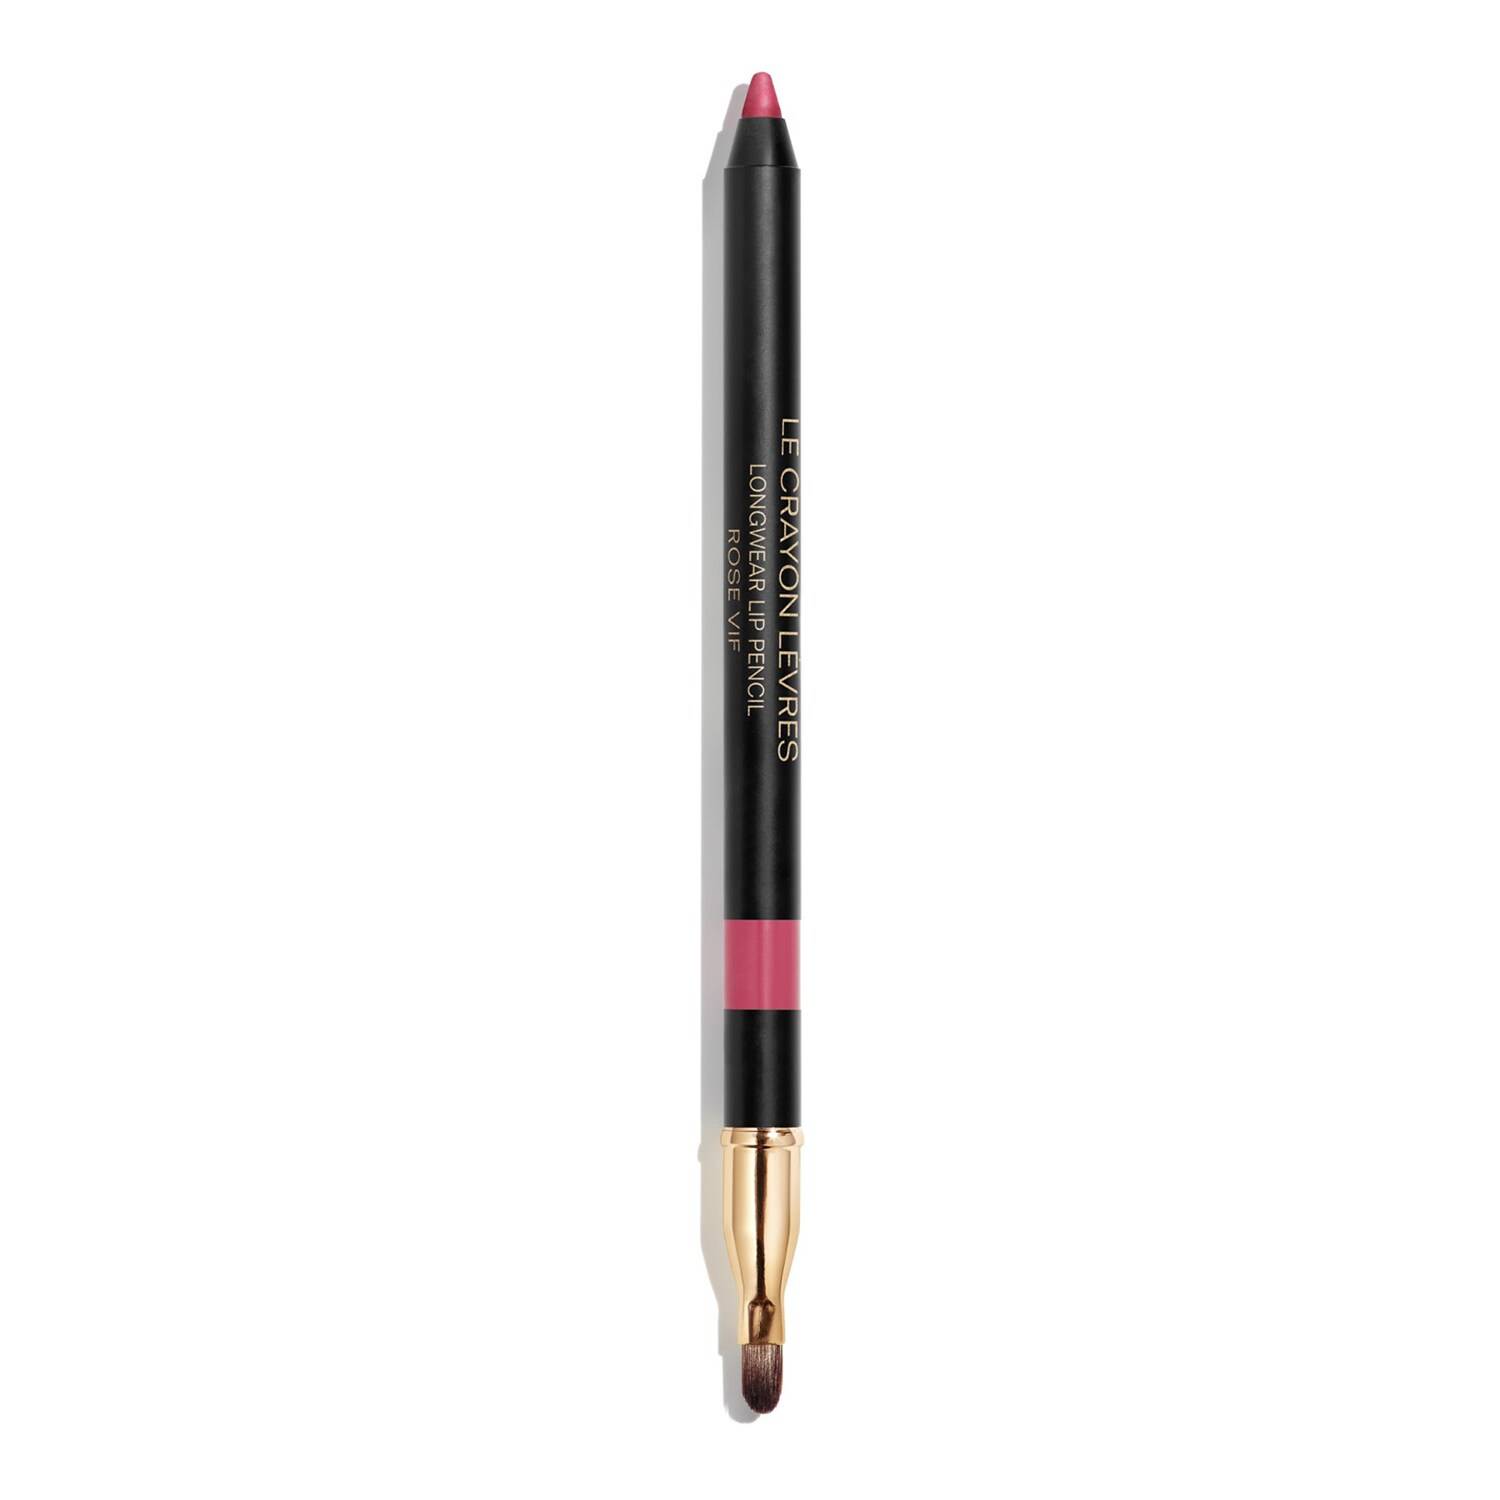 Chanel Le Crayon Levres - Longwear Lip Pencil 166 Rose Vif